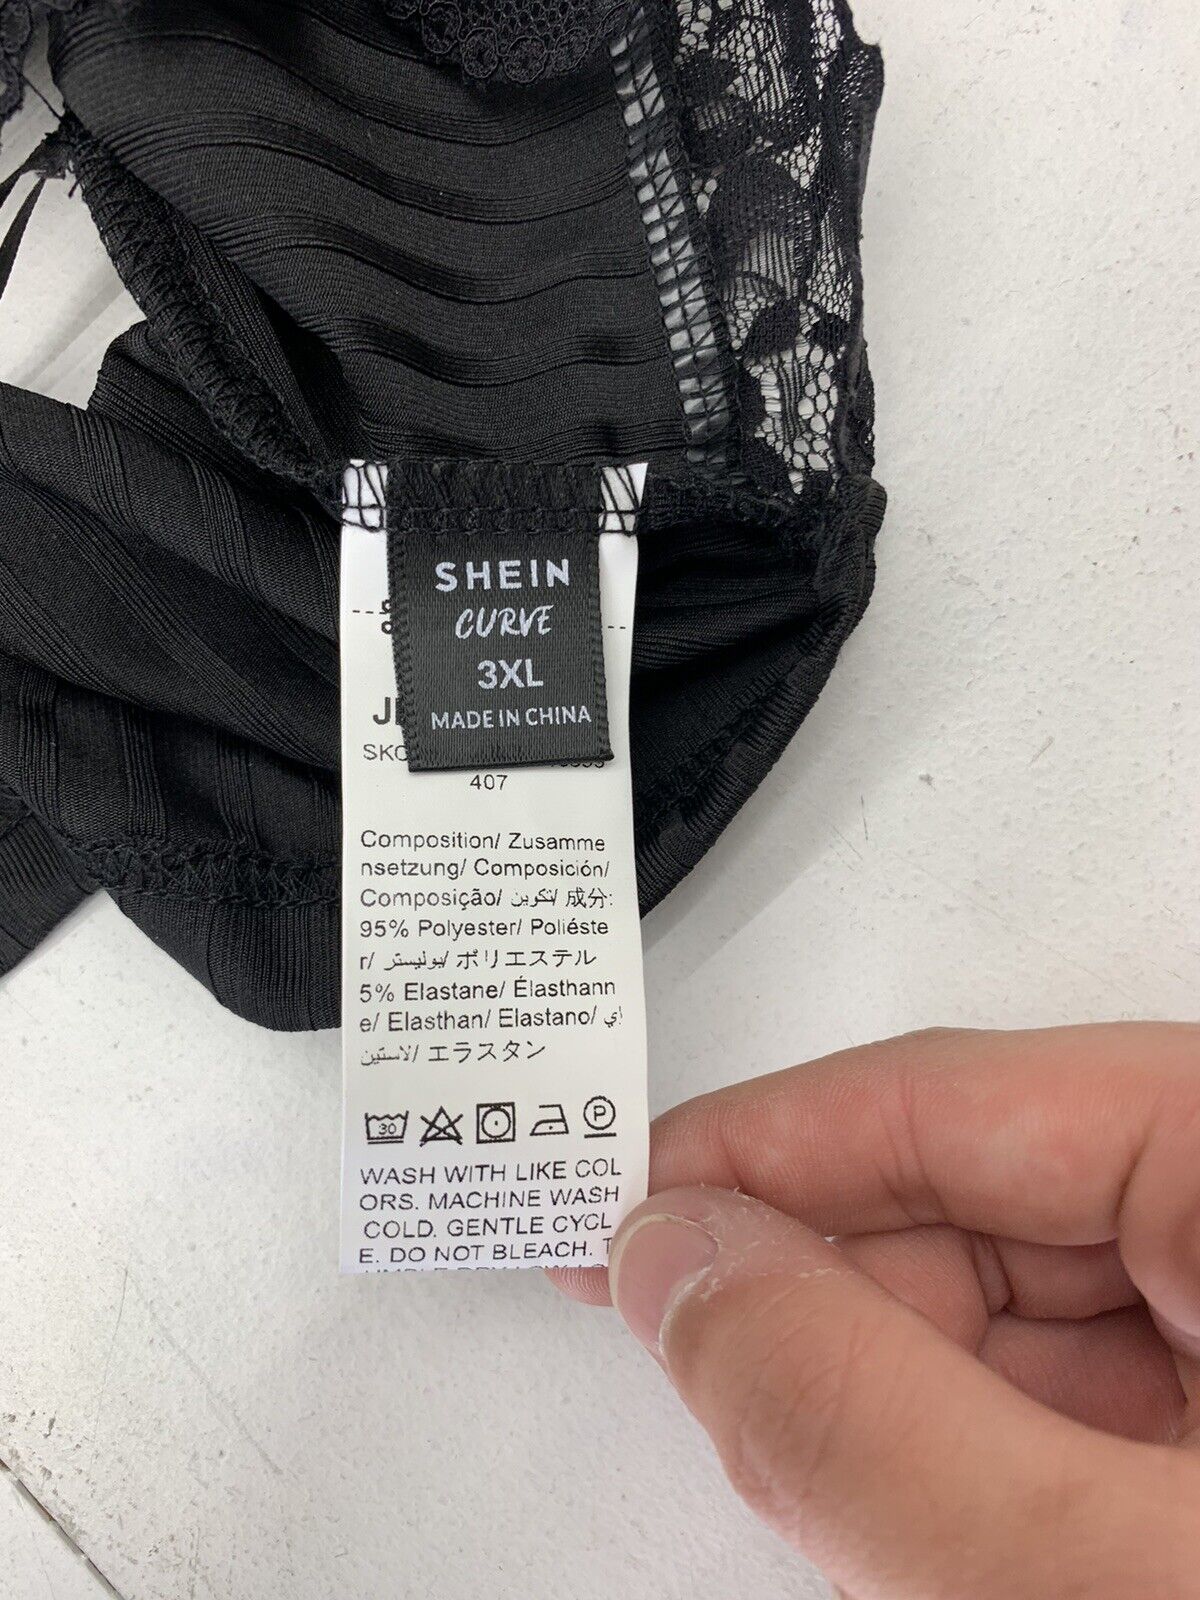 Shein Womens Black Lace Bralette Size 3XL - beyond exchange